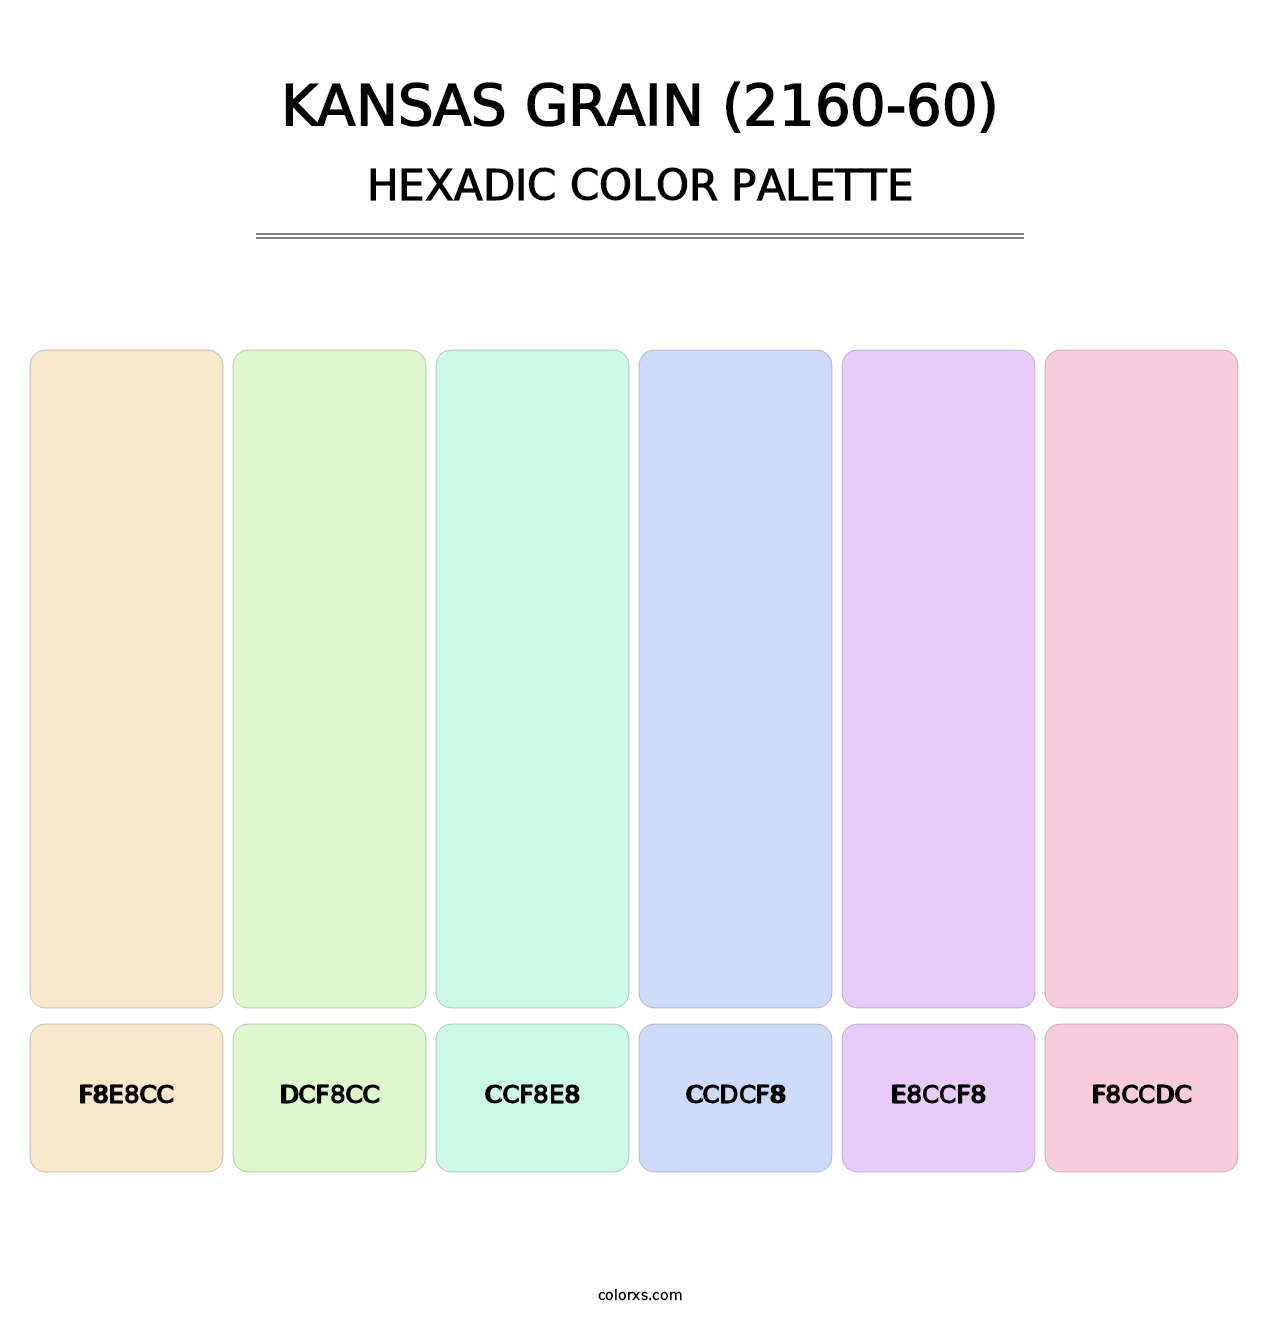 Kansas Grain (2160-60) - Hexadic Color Palette